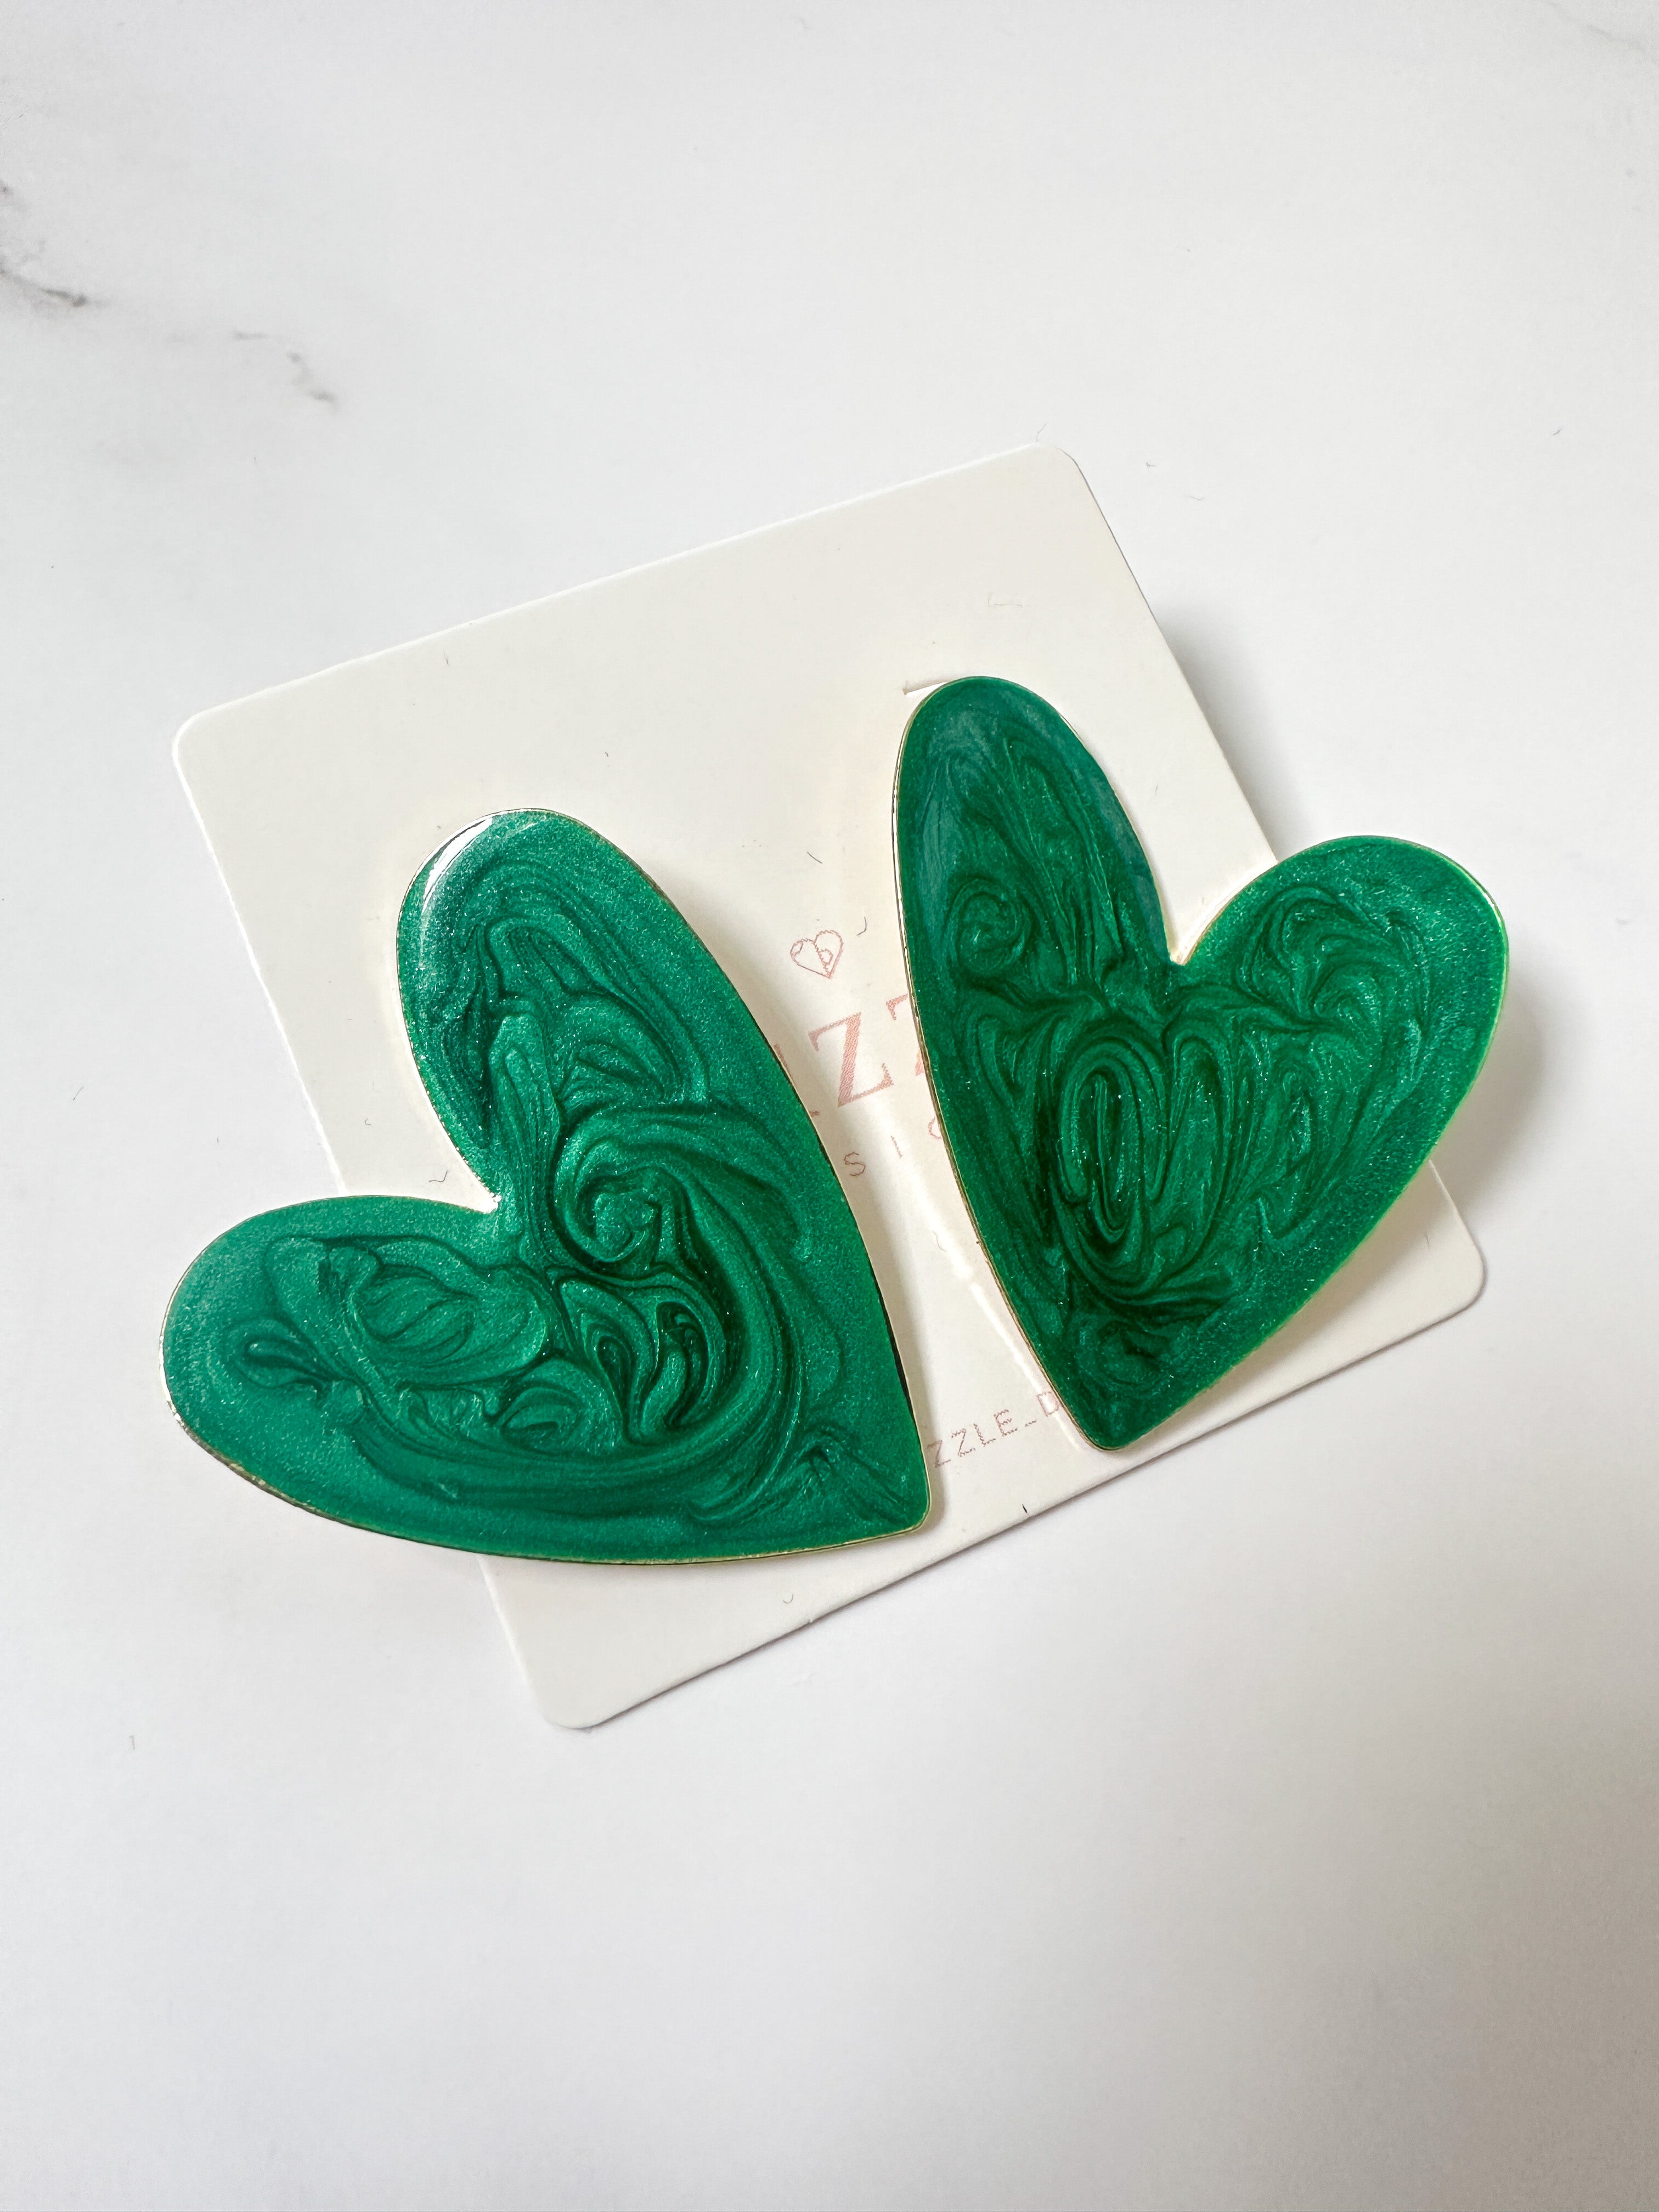 Maxi hearts handmade painted